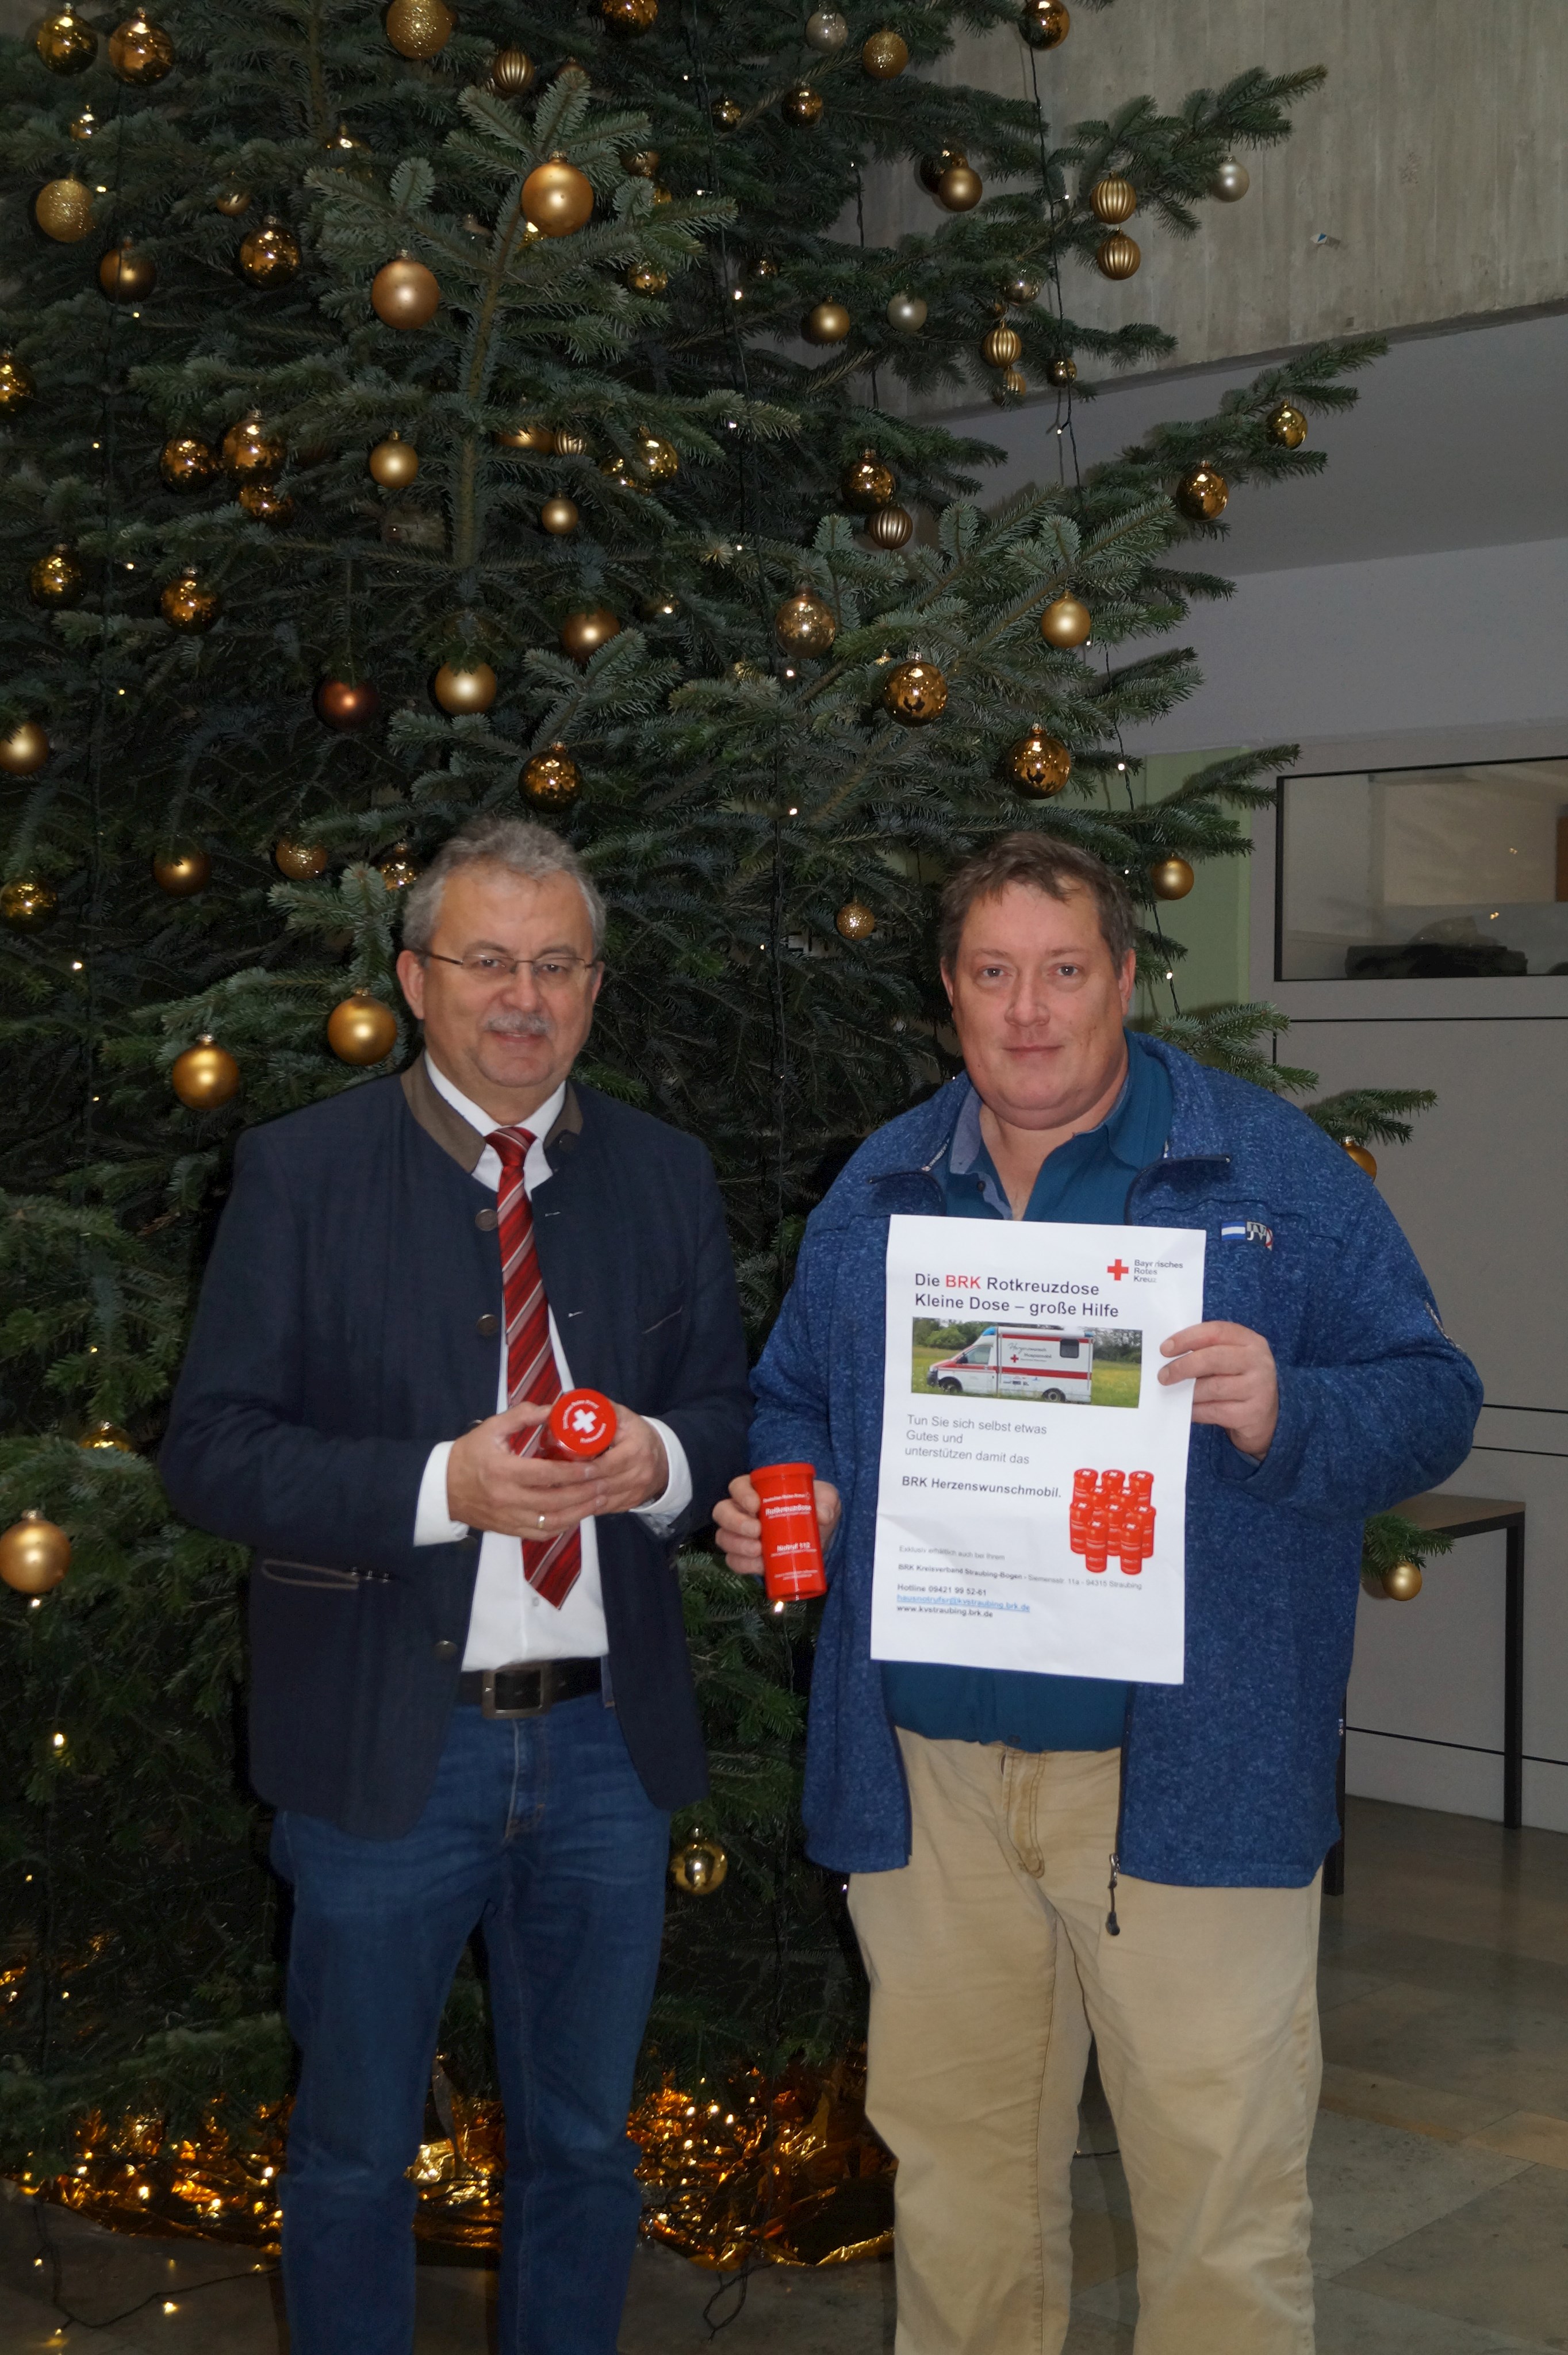 Landrat Josef Laumer (links) und der Personalratsvorsitzende Alexander Penzkofer mit der Rotkreuzdose in der Hand vor dem Weihnachtsbaum im Foyer des Landratsamtes.